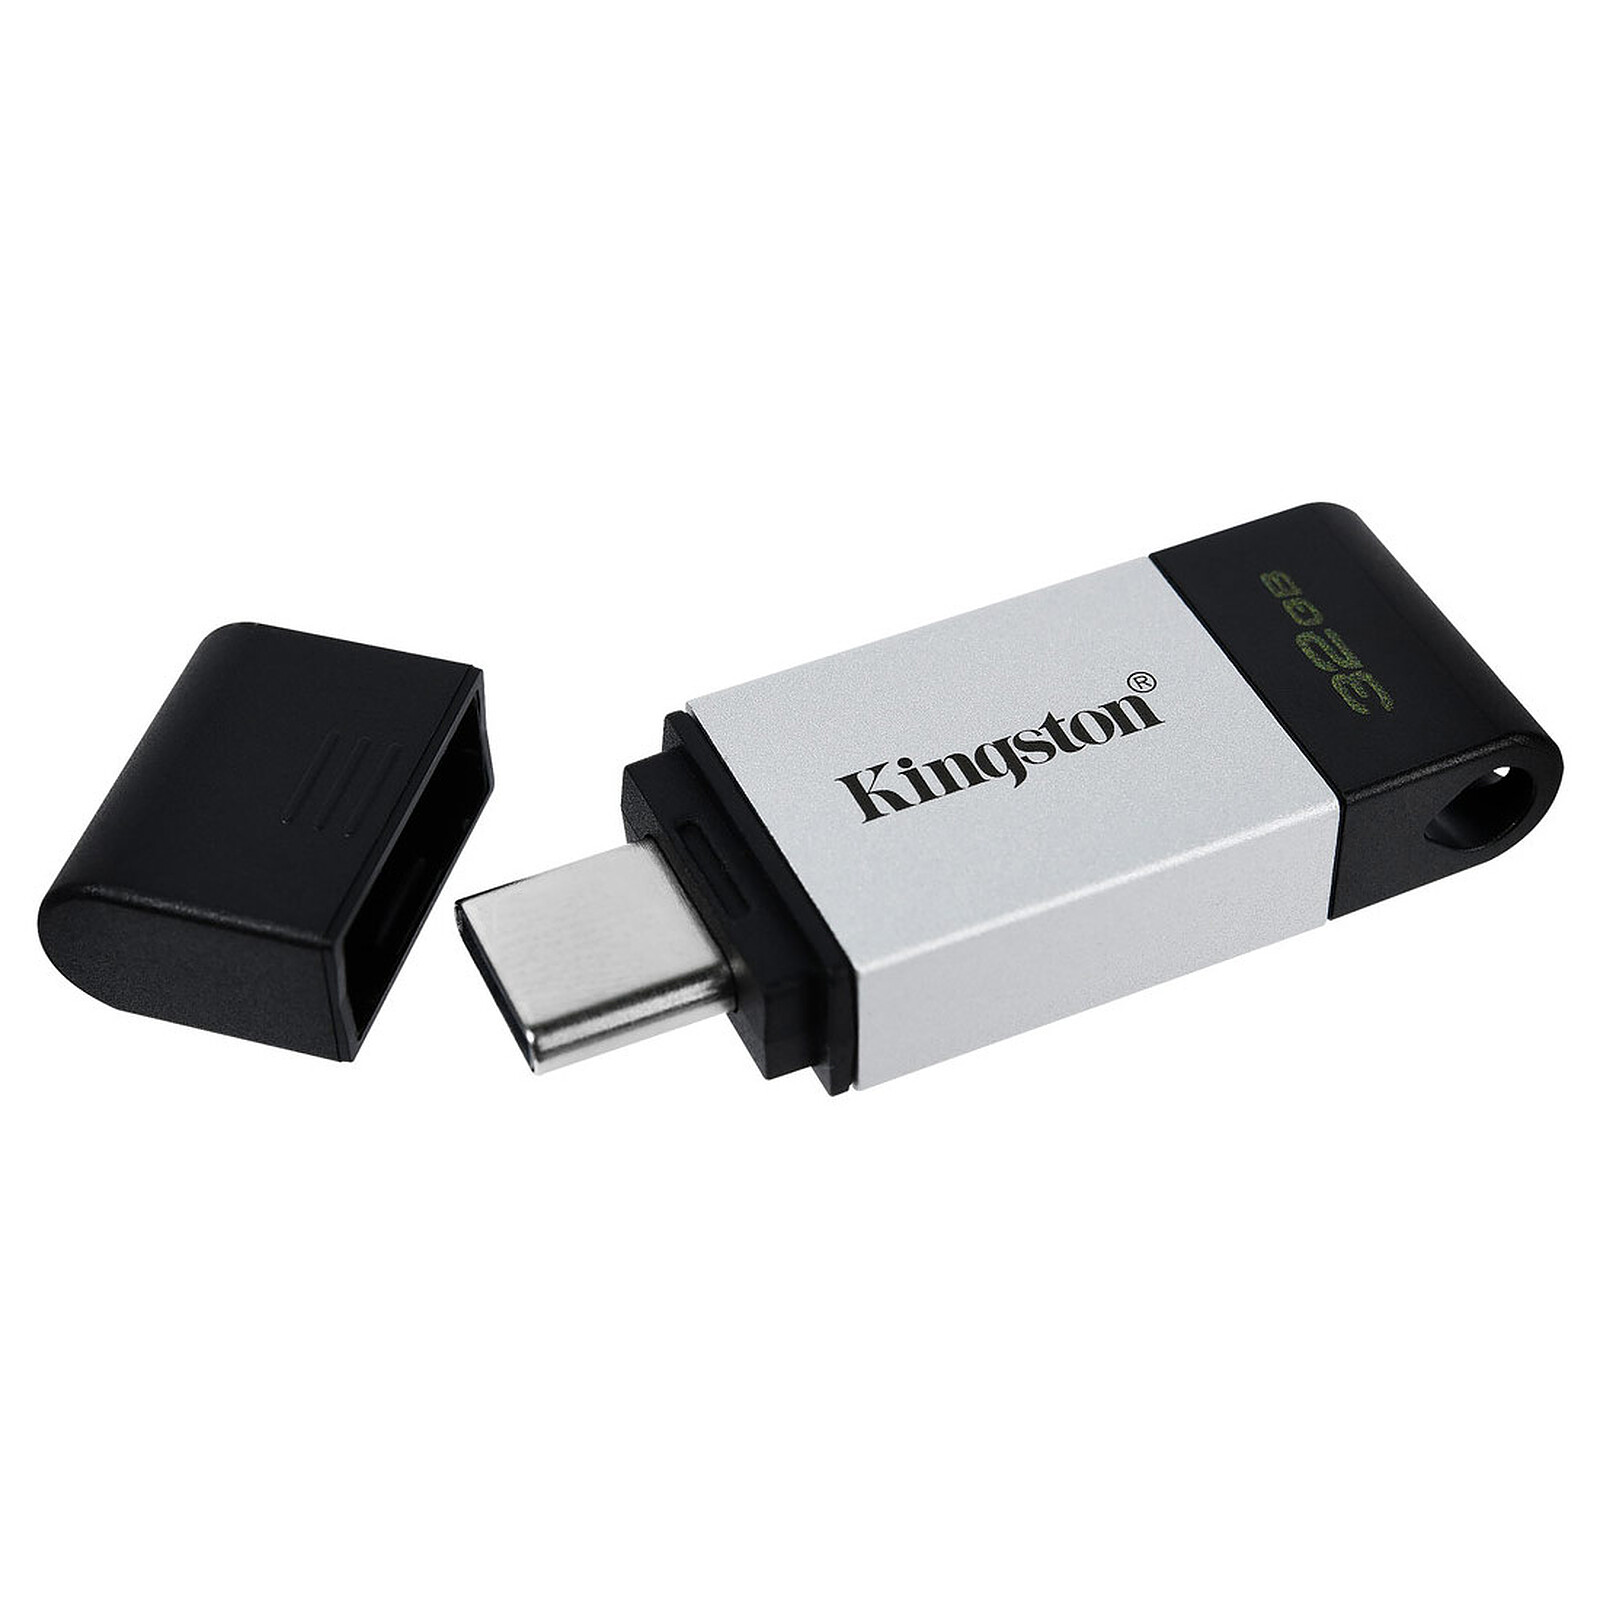 SanDisk Extreme Go USB 3.0 128 Go - Clé USB - LDLC